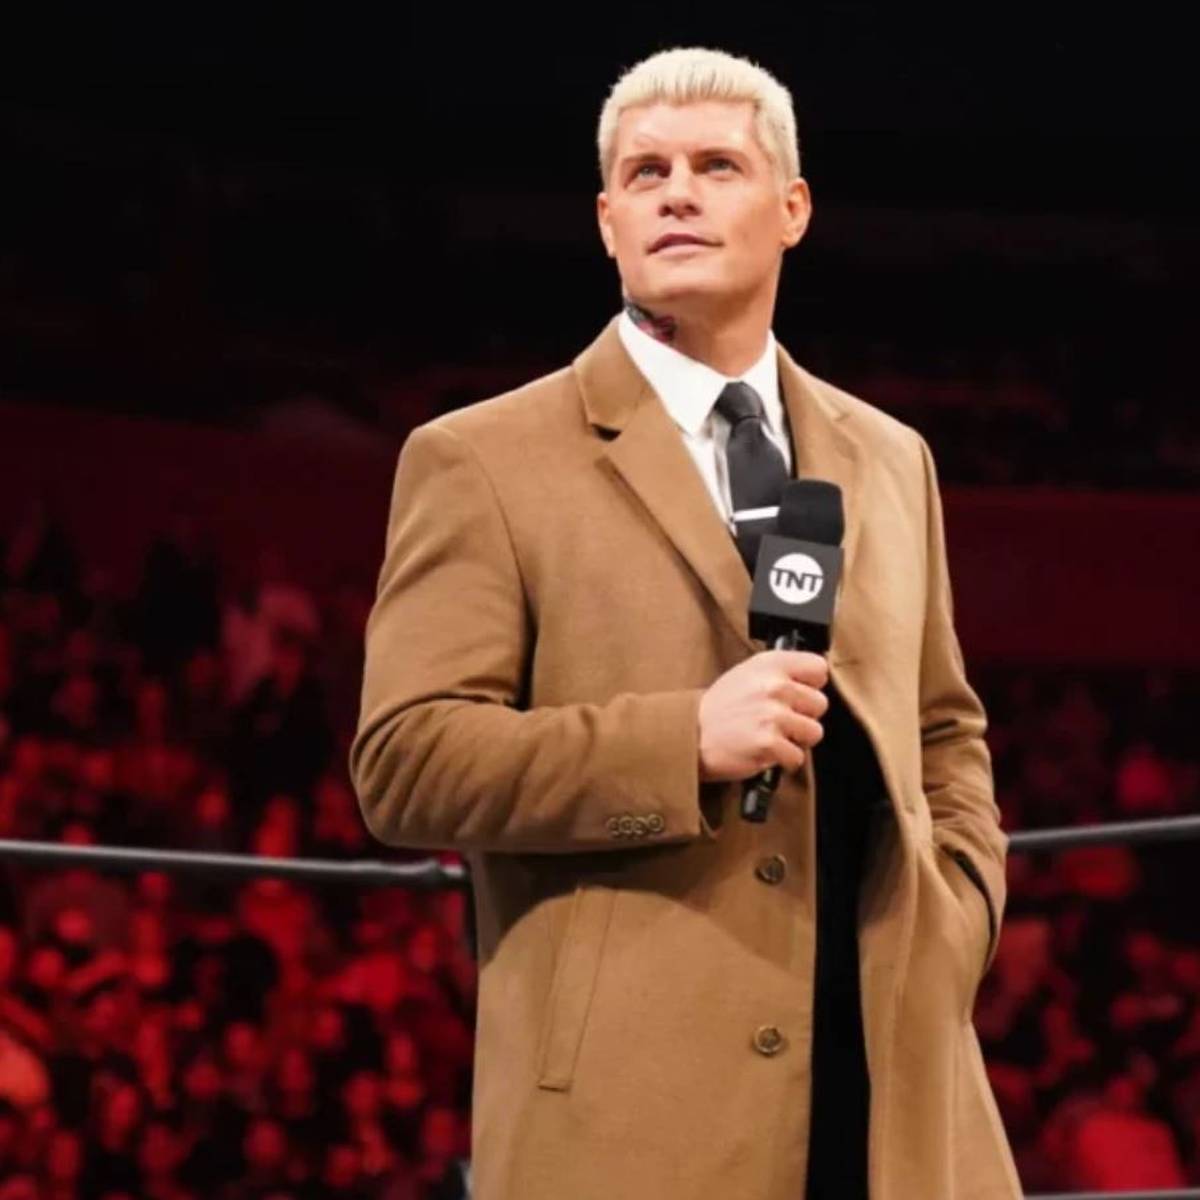 Spektakuläre Enthüllung um AEW-Mitgründer Cody Rhodes: Der amtierende TNT-Champion soll aktuell ohne Vertrag antreten - wird er doch wieder ein Fall für WWE?